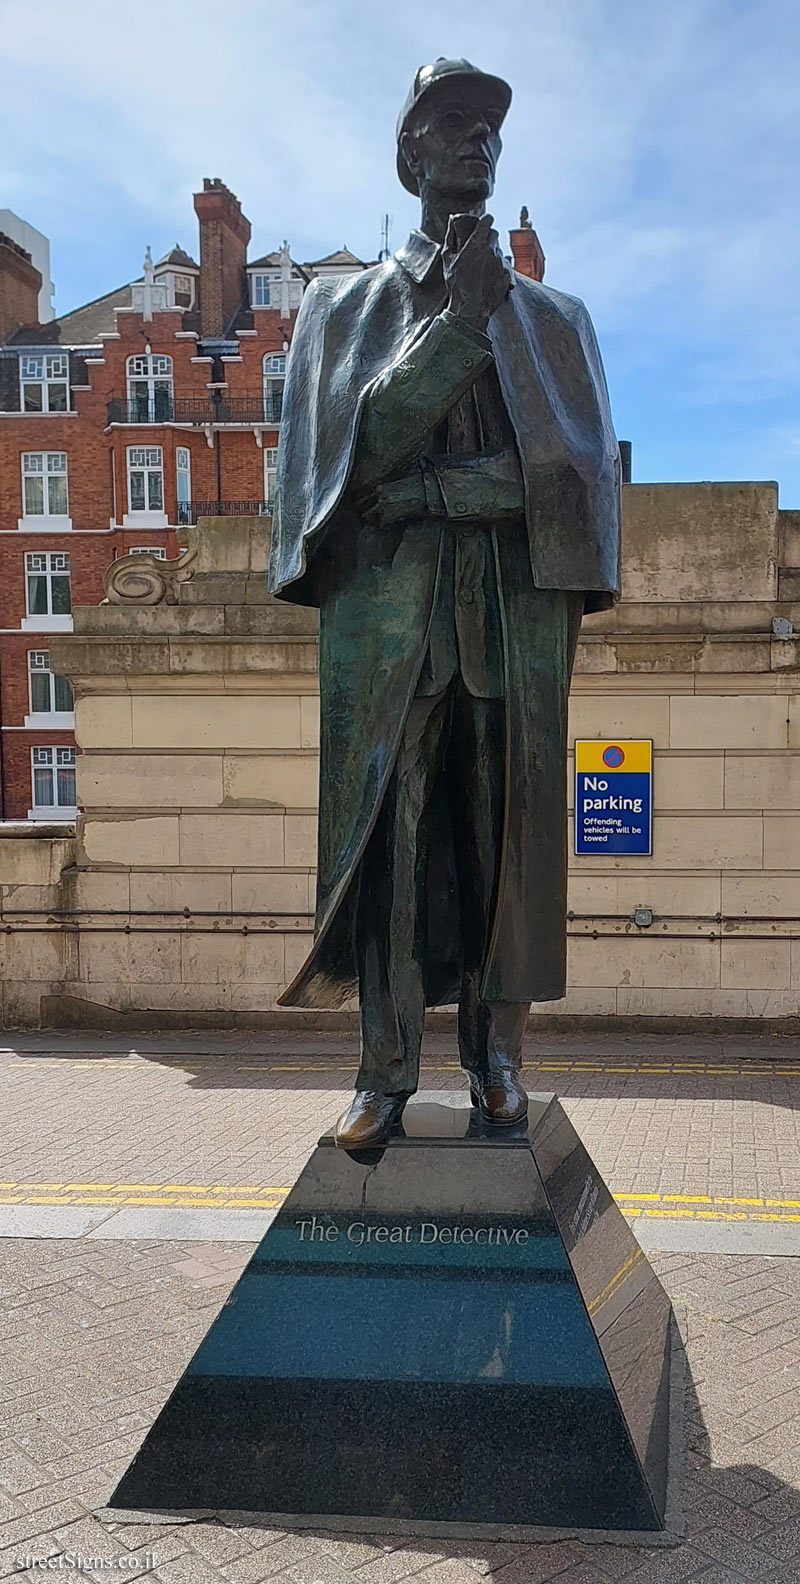 London - Sherlock Holmes statue - Baker Street Station (Stop D), London NW1 5RZ, UK